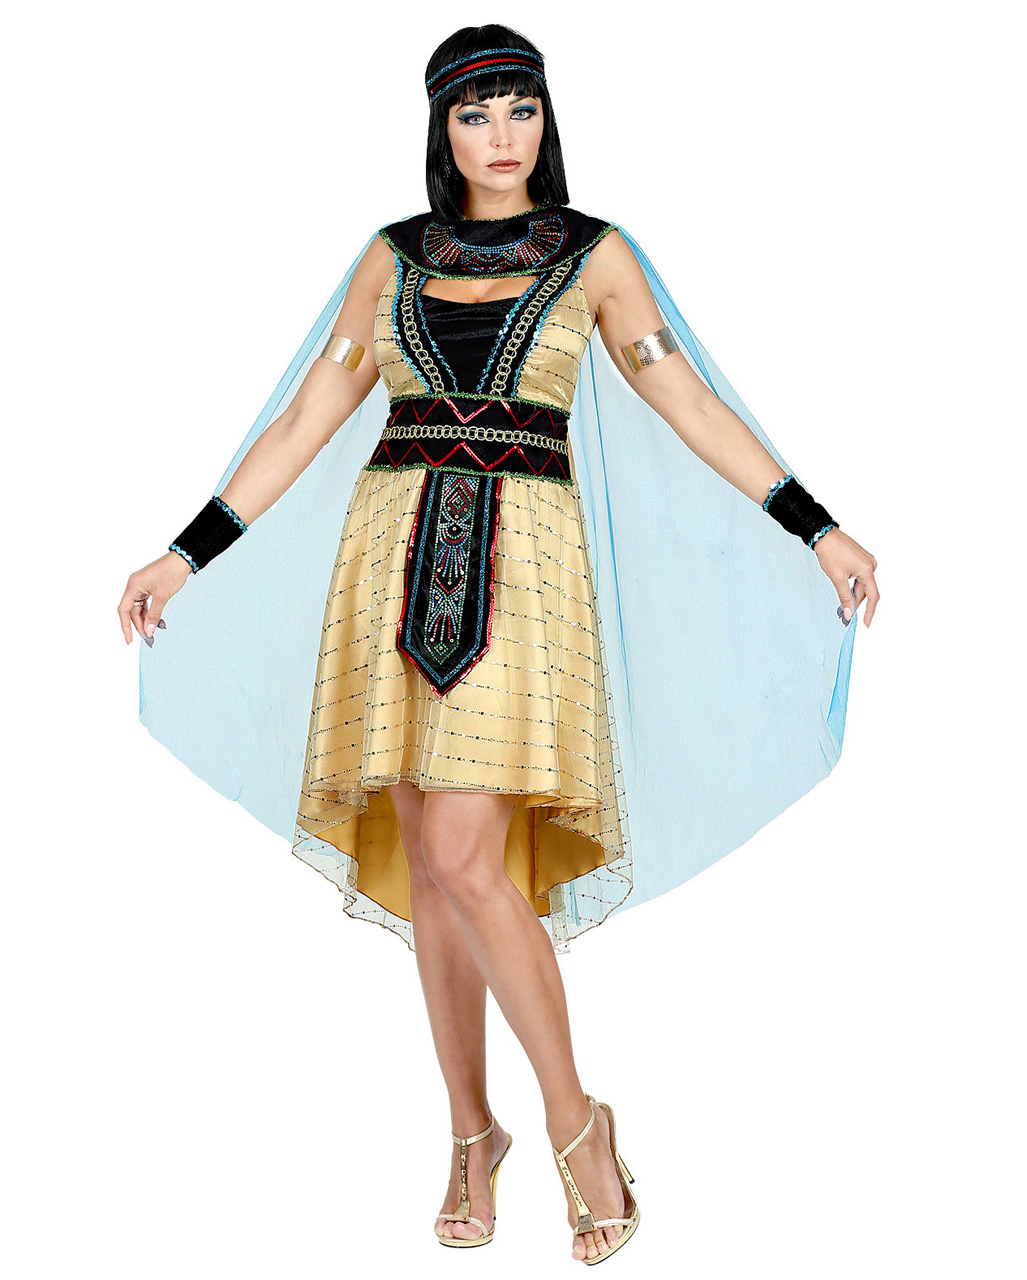 SCHWARZE CLEOPATRA PERÜCKE # Ägypten Pharao Kleopatra Königin Kostüm Party 6316 